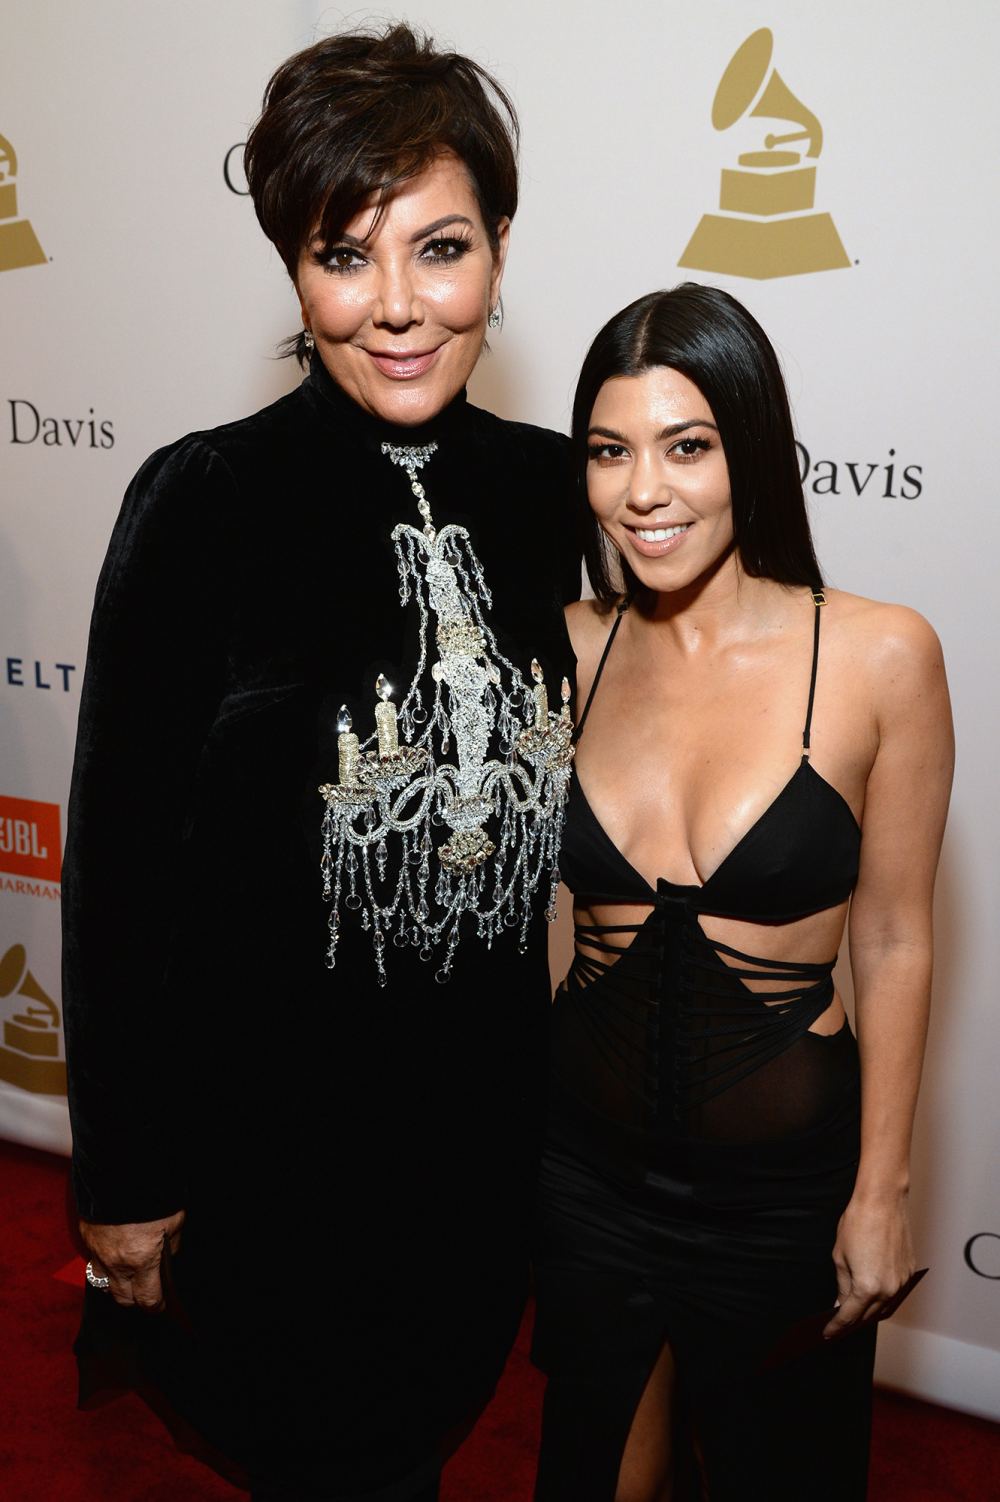 Kris Jenner and Kourtney Kardashian’s New Wax Figures Look Exactly Like Them